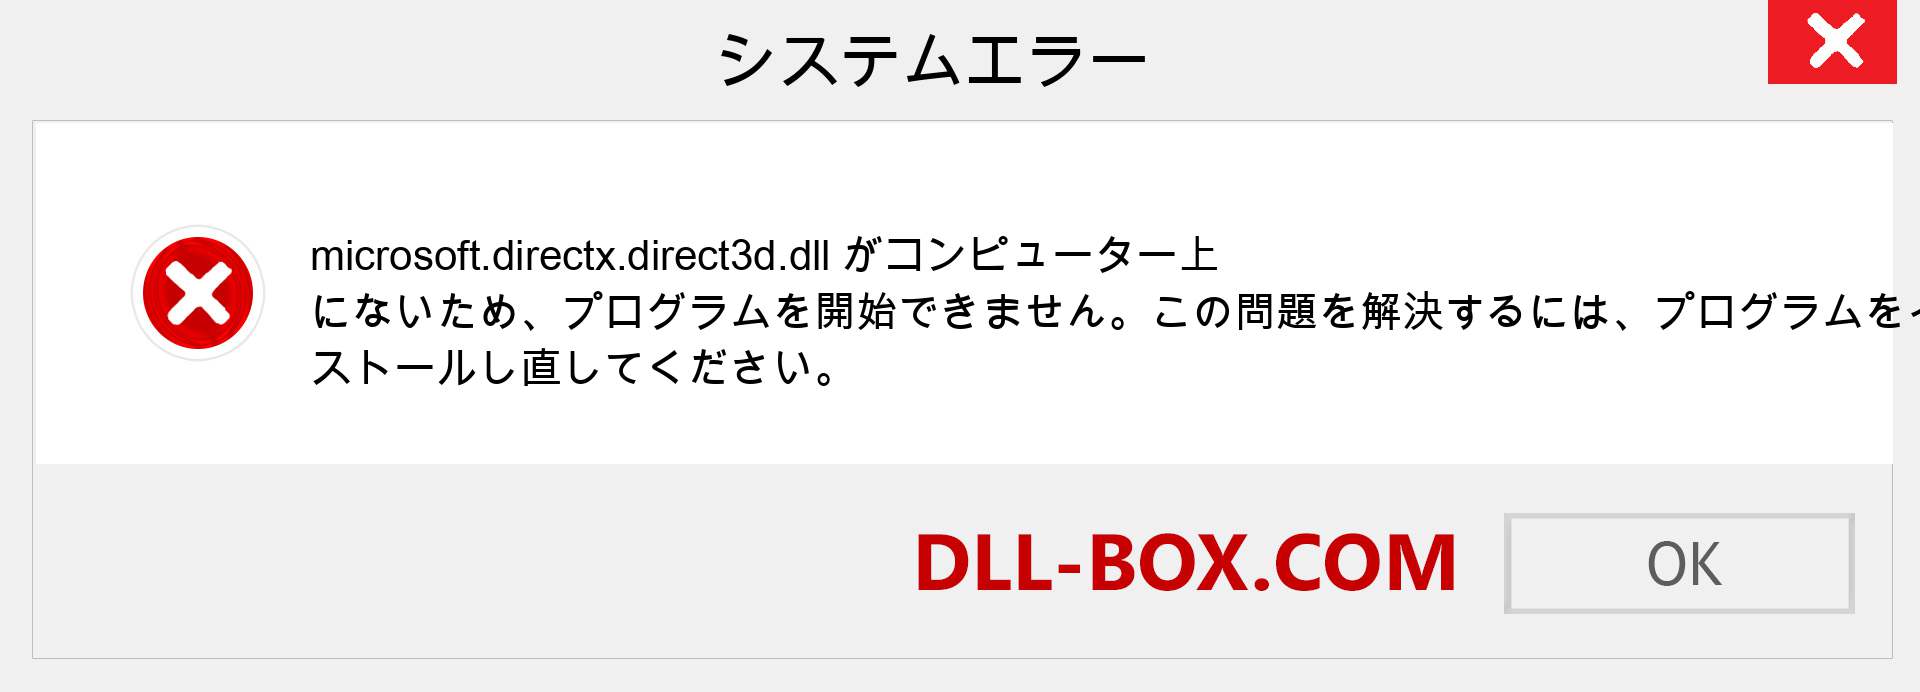 microsoft.directx.direct3d.dllファイルがありませんか？ Windows 7、8、10用にダウンロード-Windows、写真、画像でmicrosoft.directx.direct3ddllの欠落エラーを修正